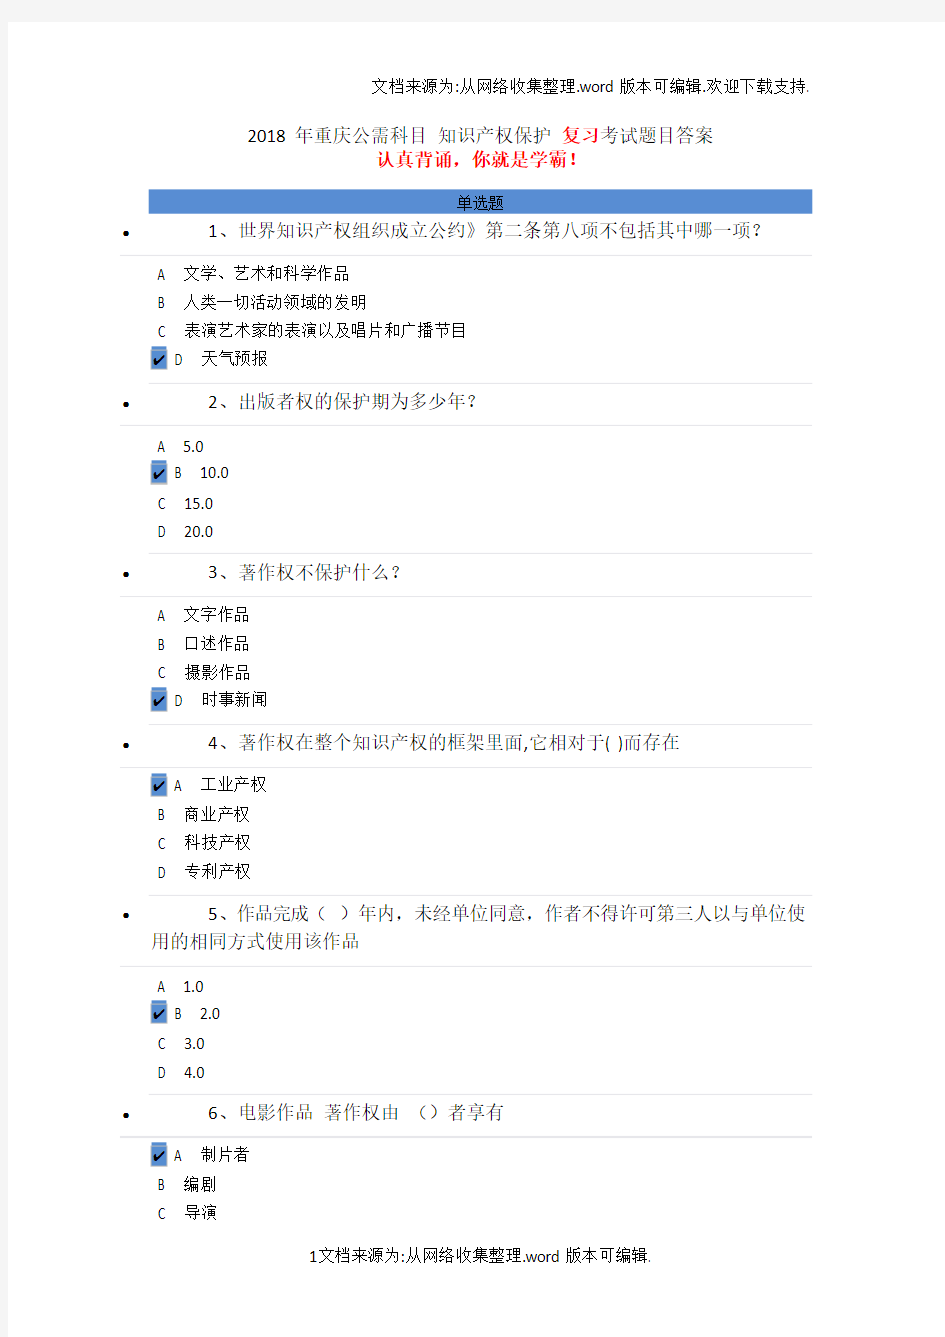 2020年重庆公需科目知识产权保护复习考试题目答案(供参考)